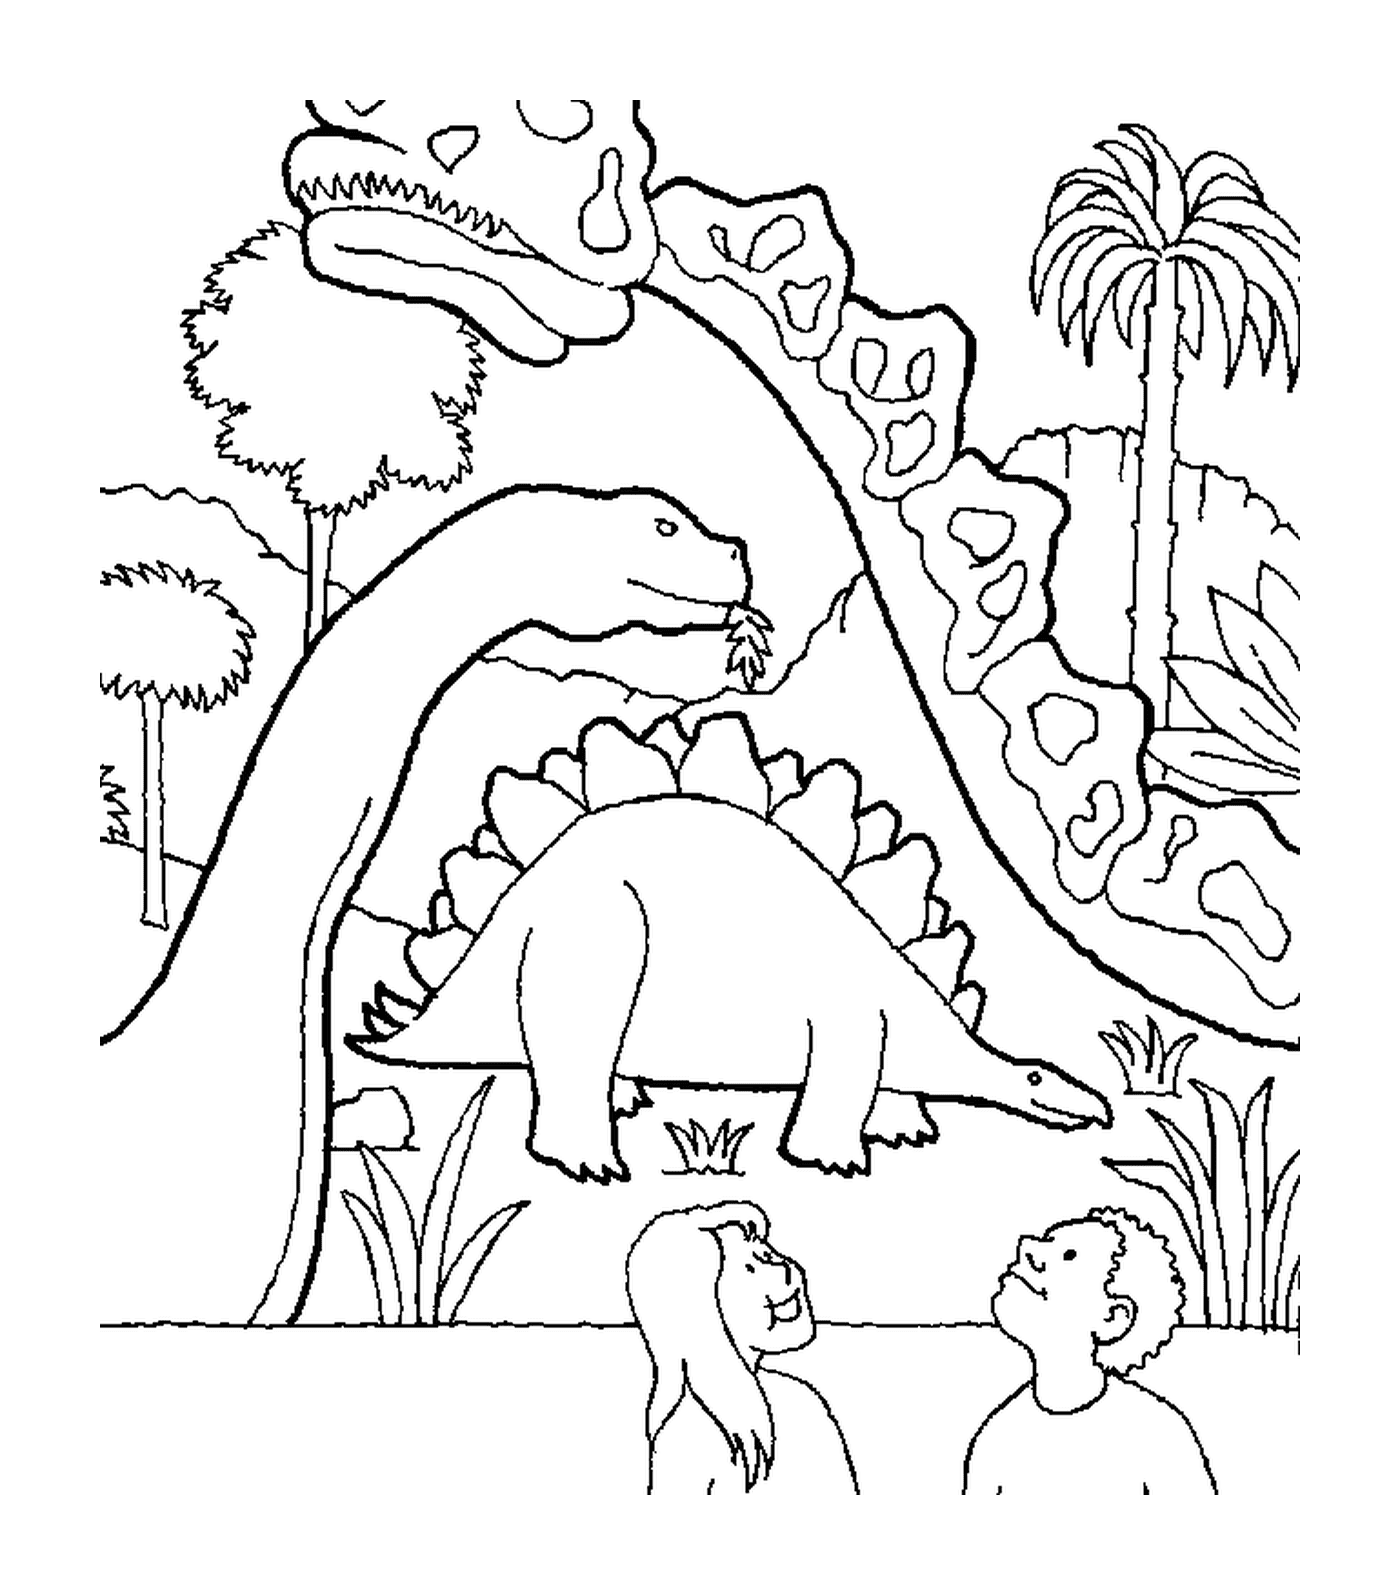  Dinosaurio rodeado de otros dos dinosaurios 